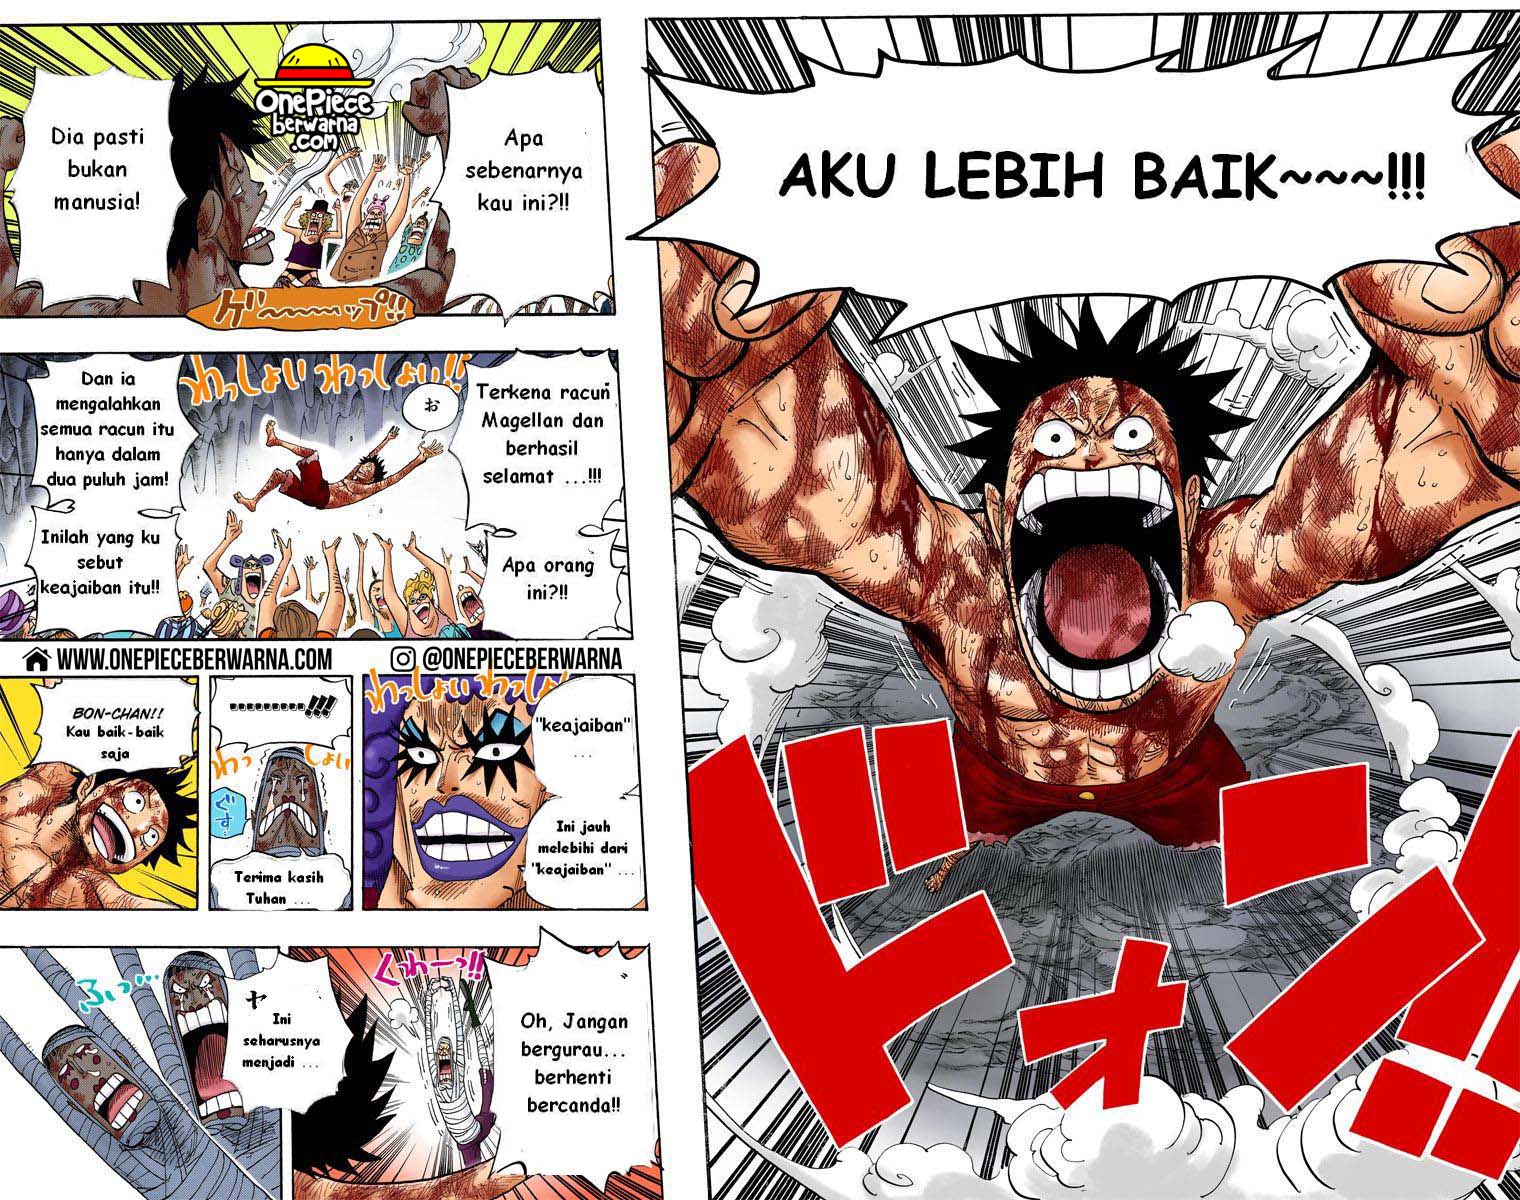 One Piece Berwarna Chapter 539